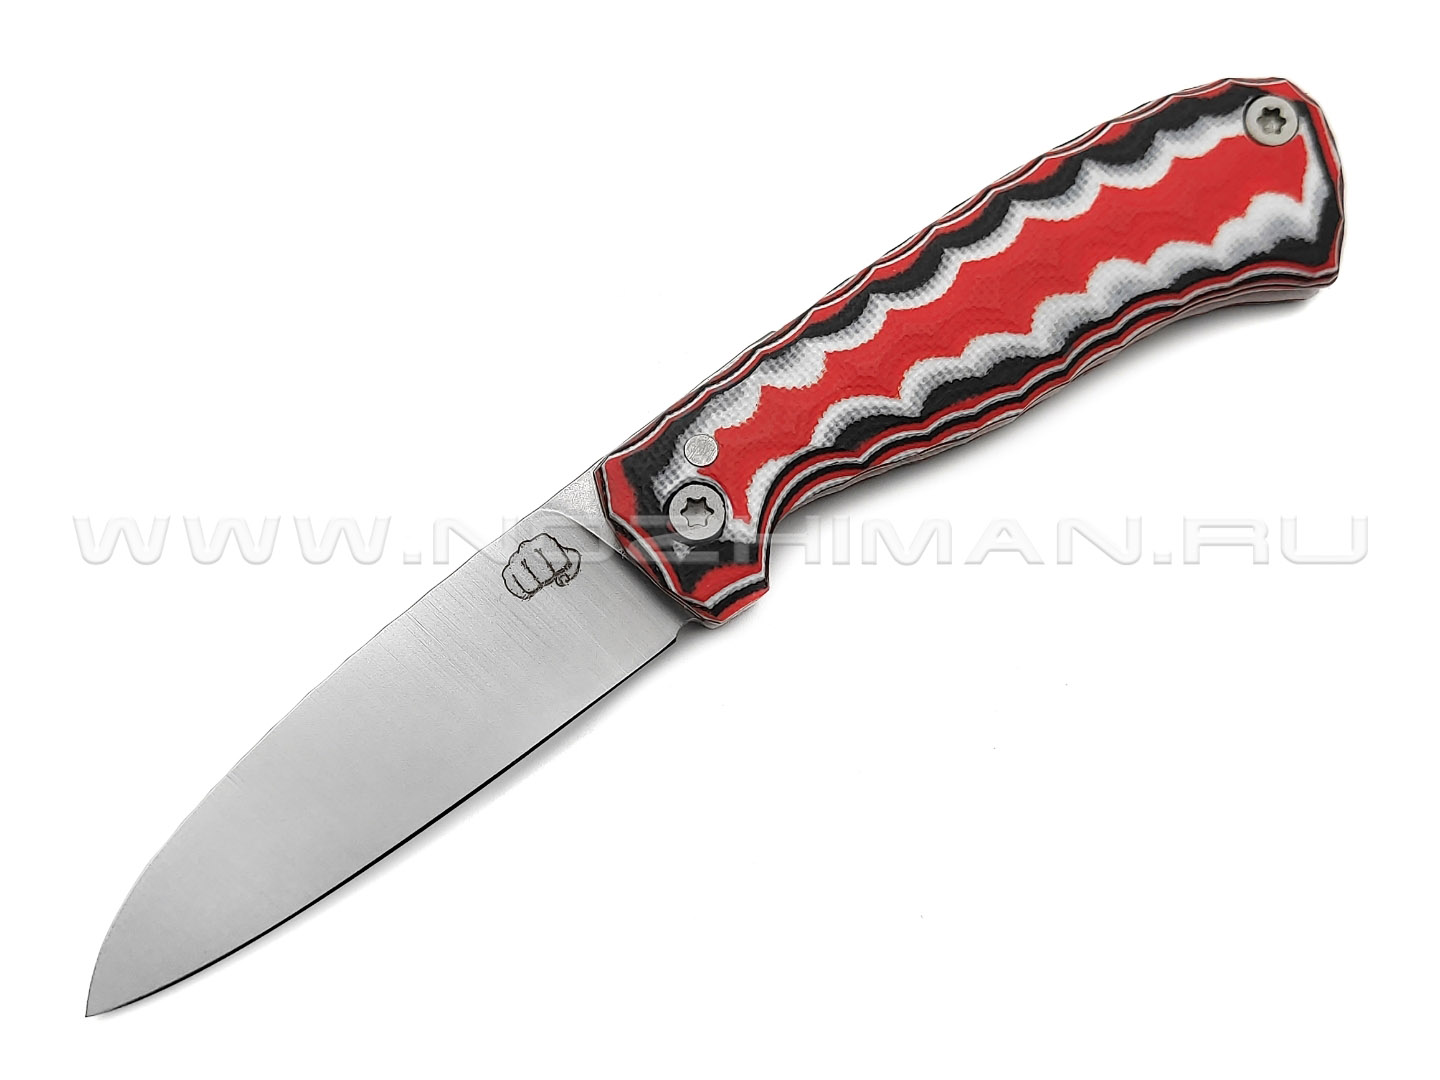 Андрей Кулаков малый фрикционный нож KUL084 сталь 95Х18, рукоять G10 laminate black-red & white